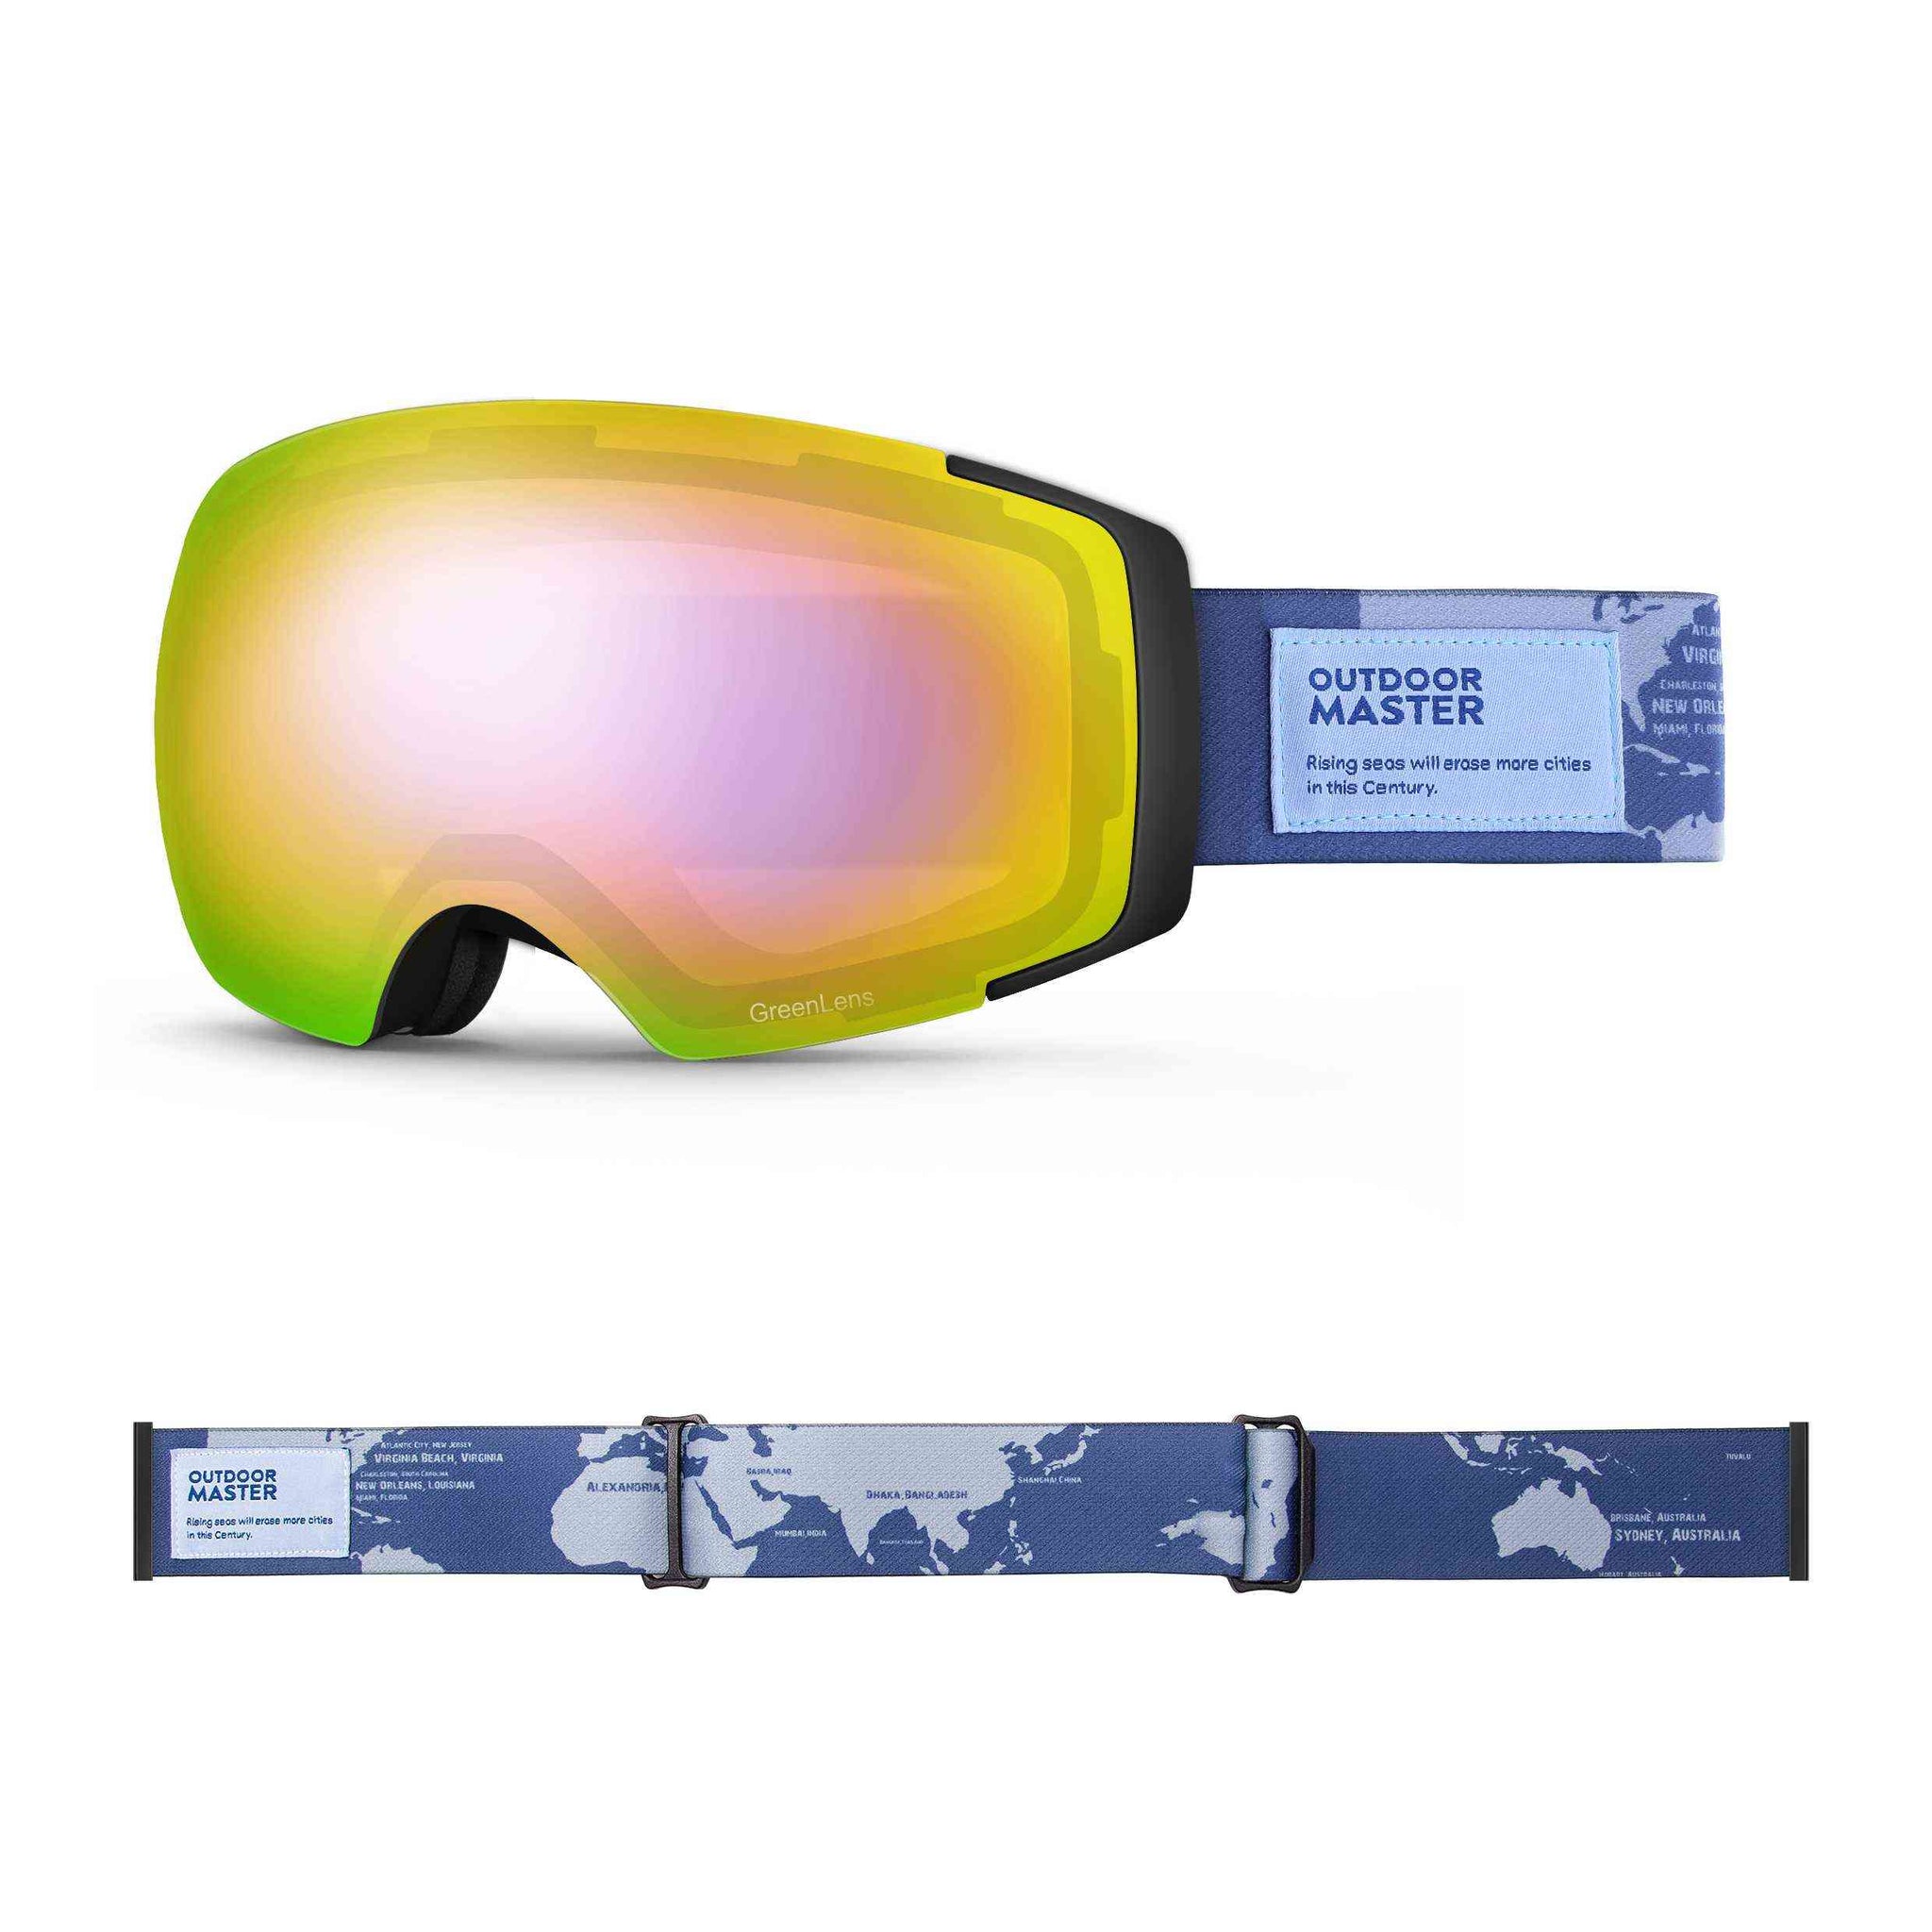 sustainable ski goggles